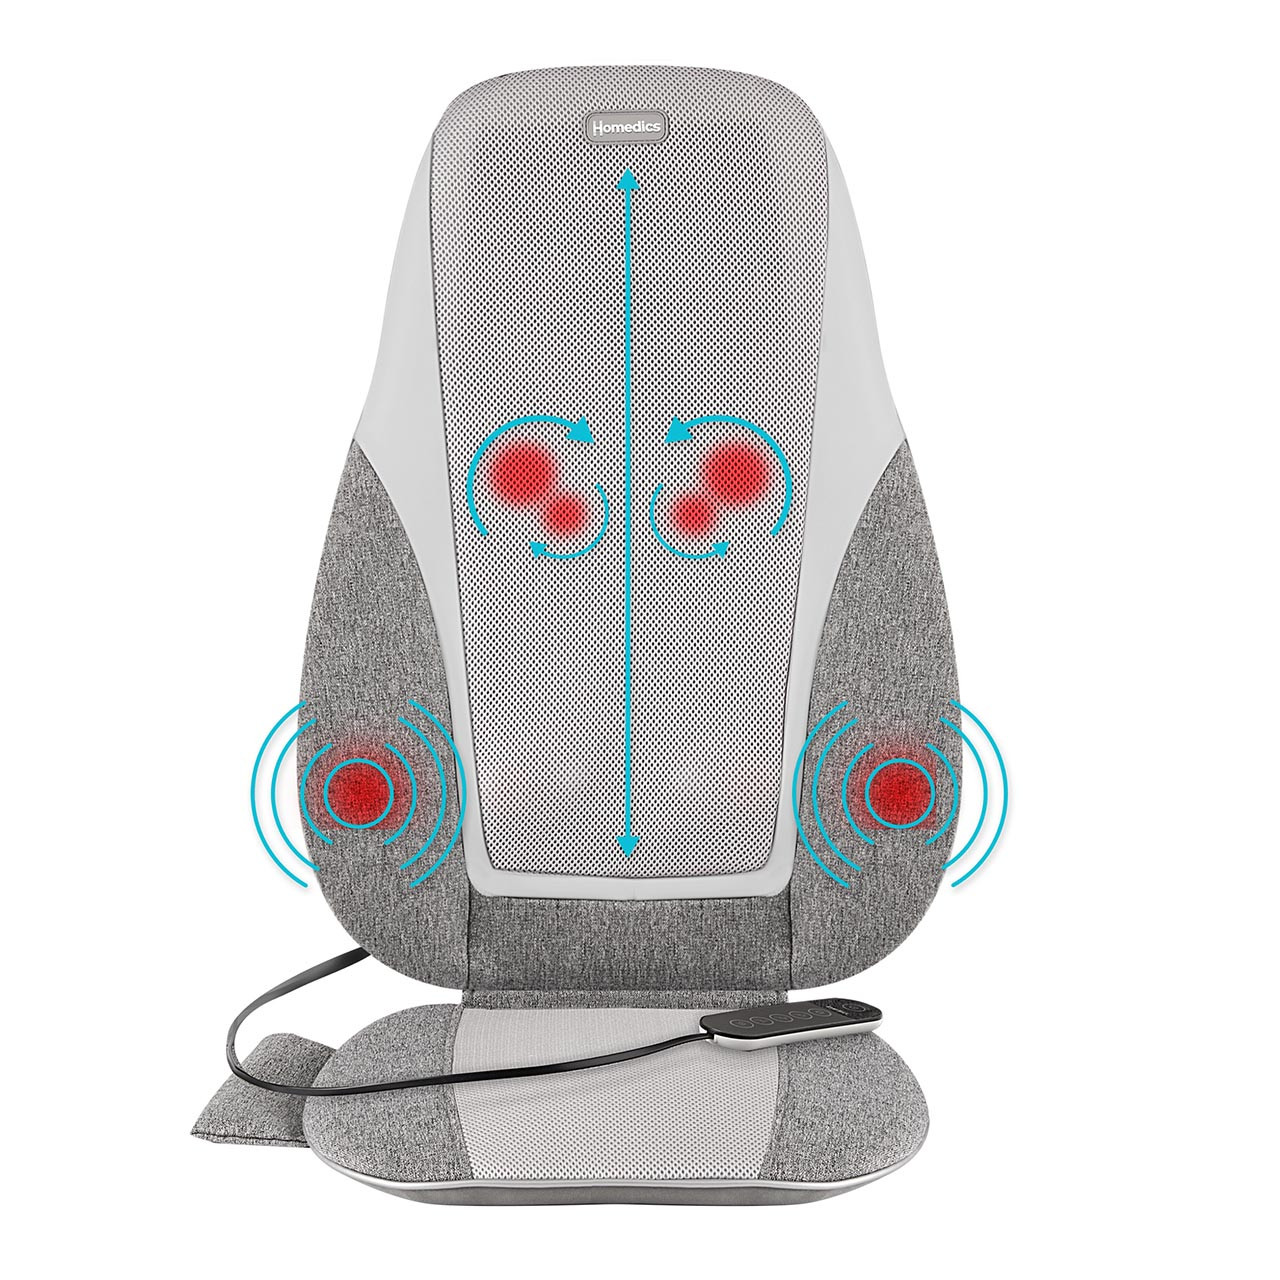 Shiatsu + Kneading & Vibration Massage Cushion with Heat - Homedics